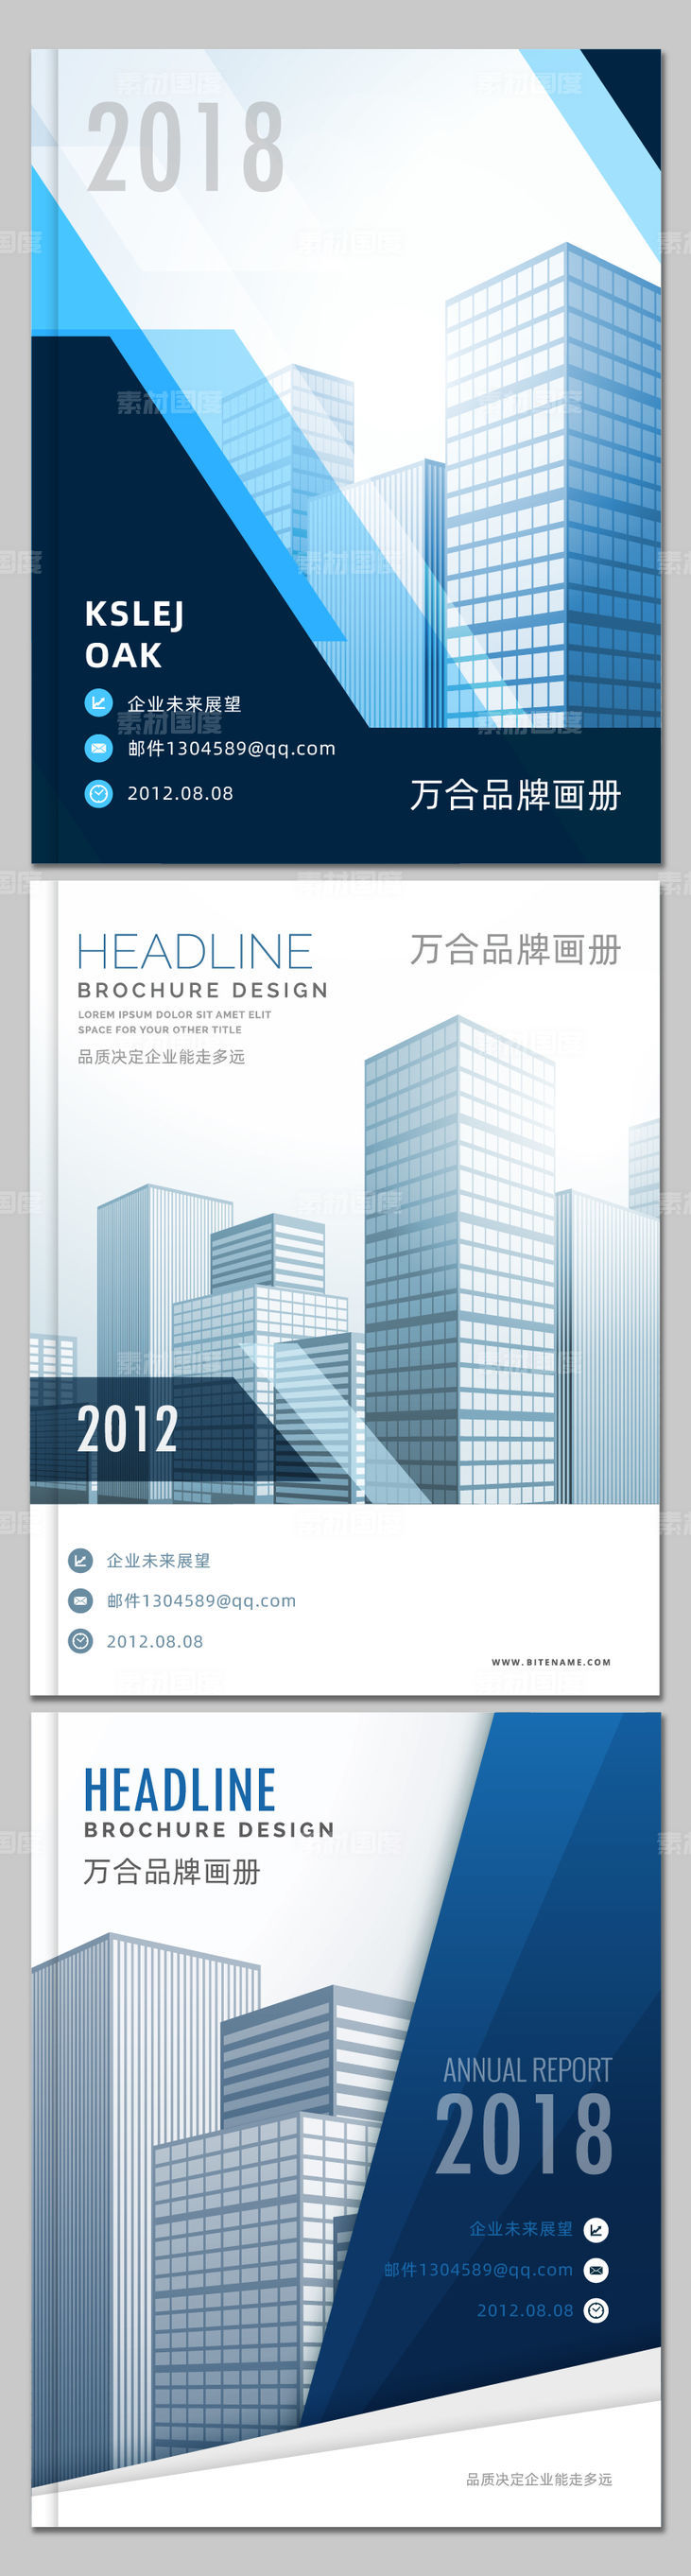 蓝色商务品质地产高端品牌手册画册封面设计